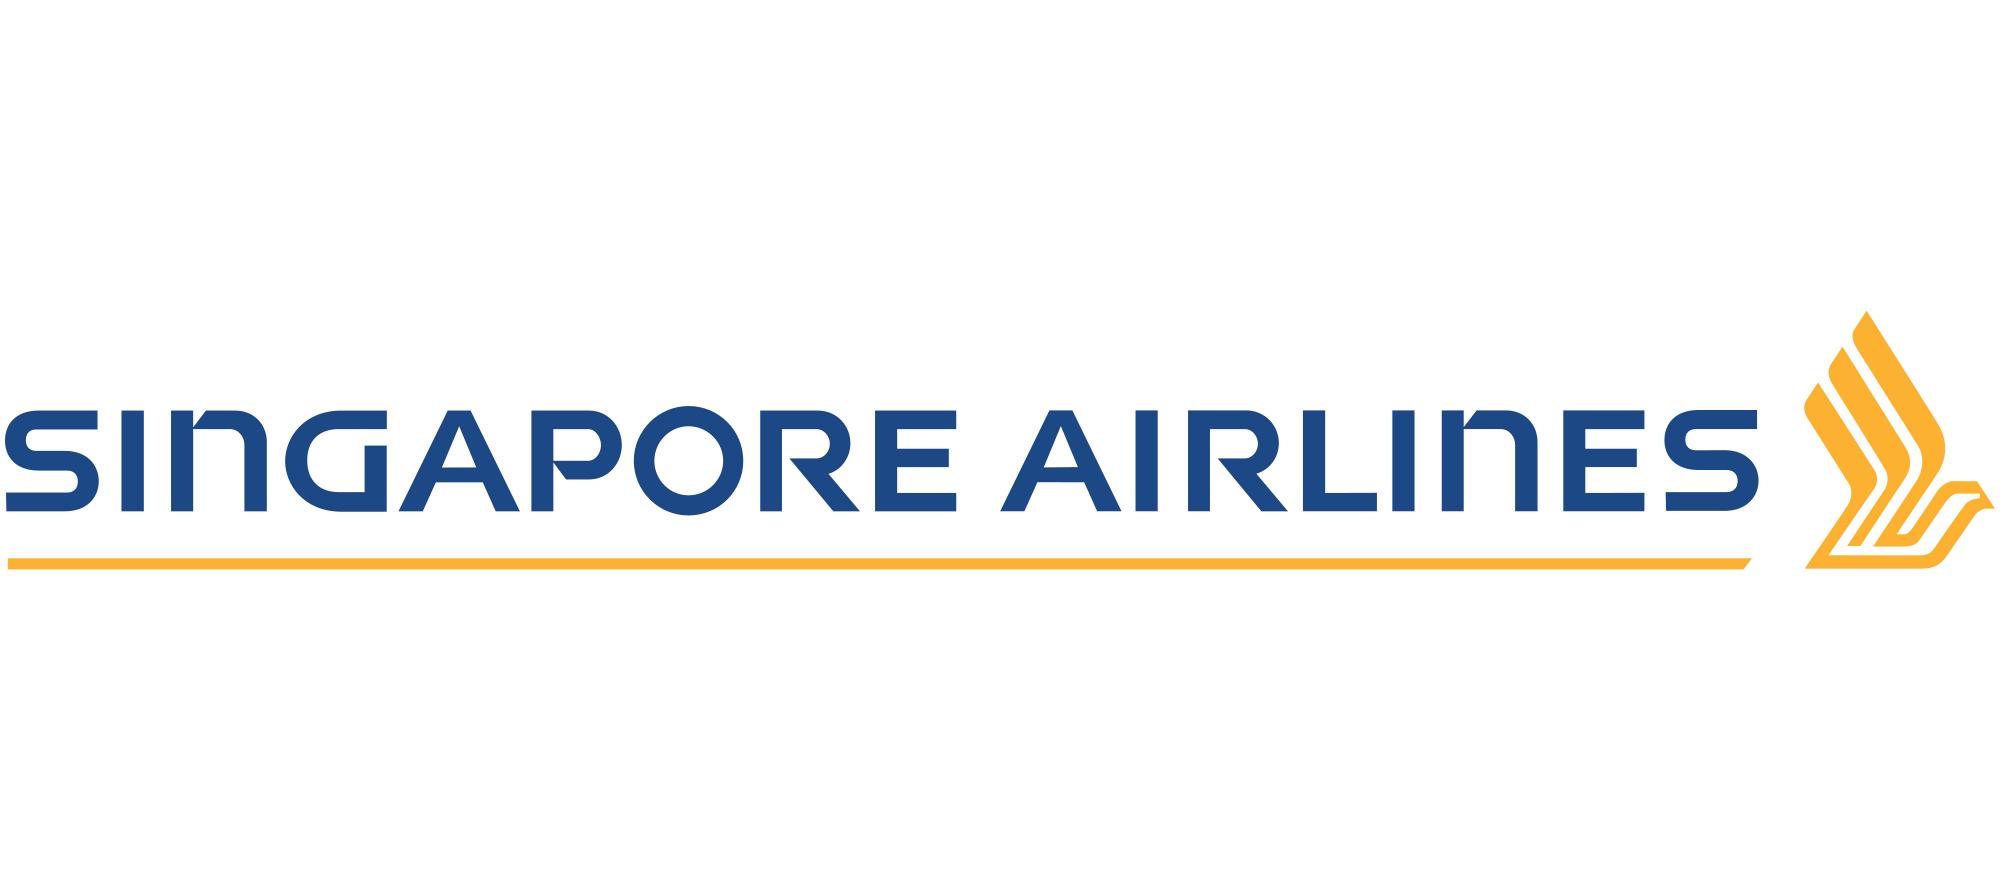 Singapore Airlines Logo - Singapore Airlines logo | Logok